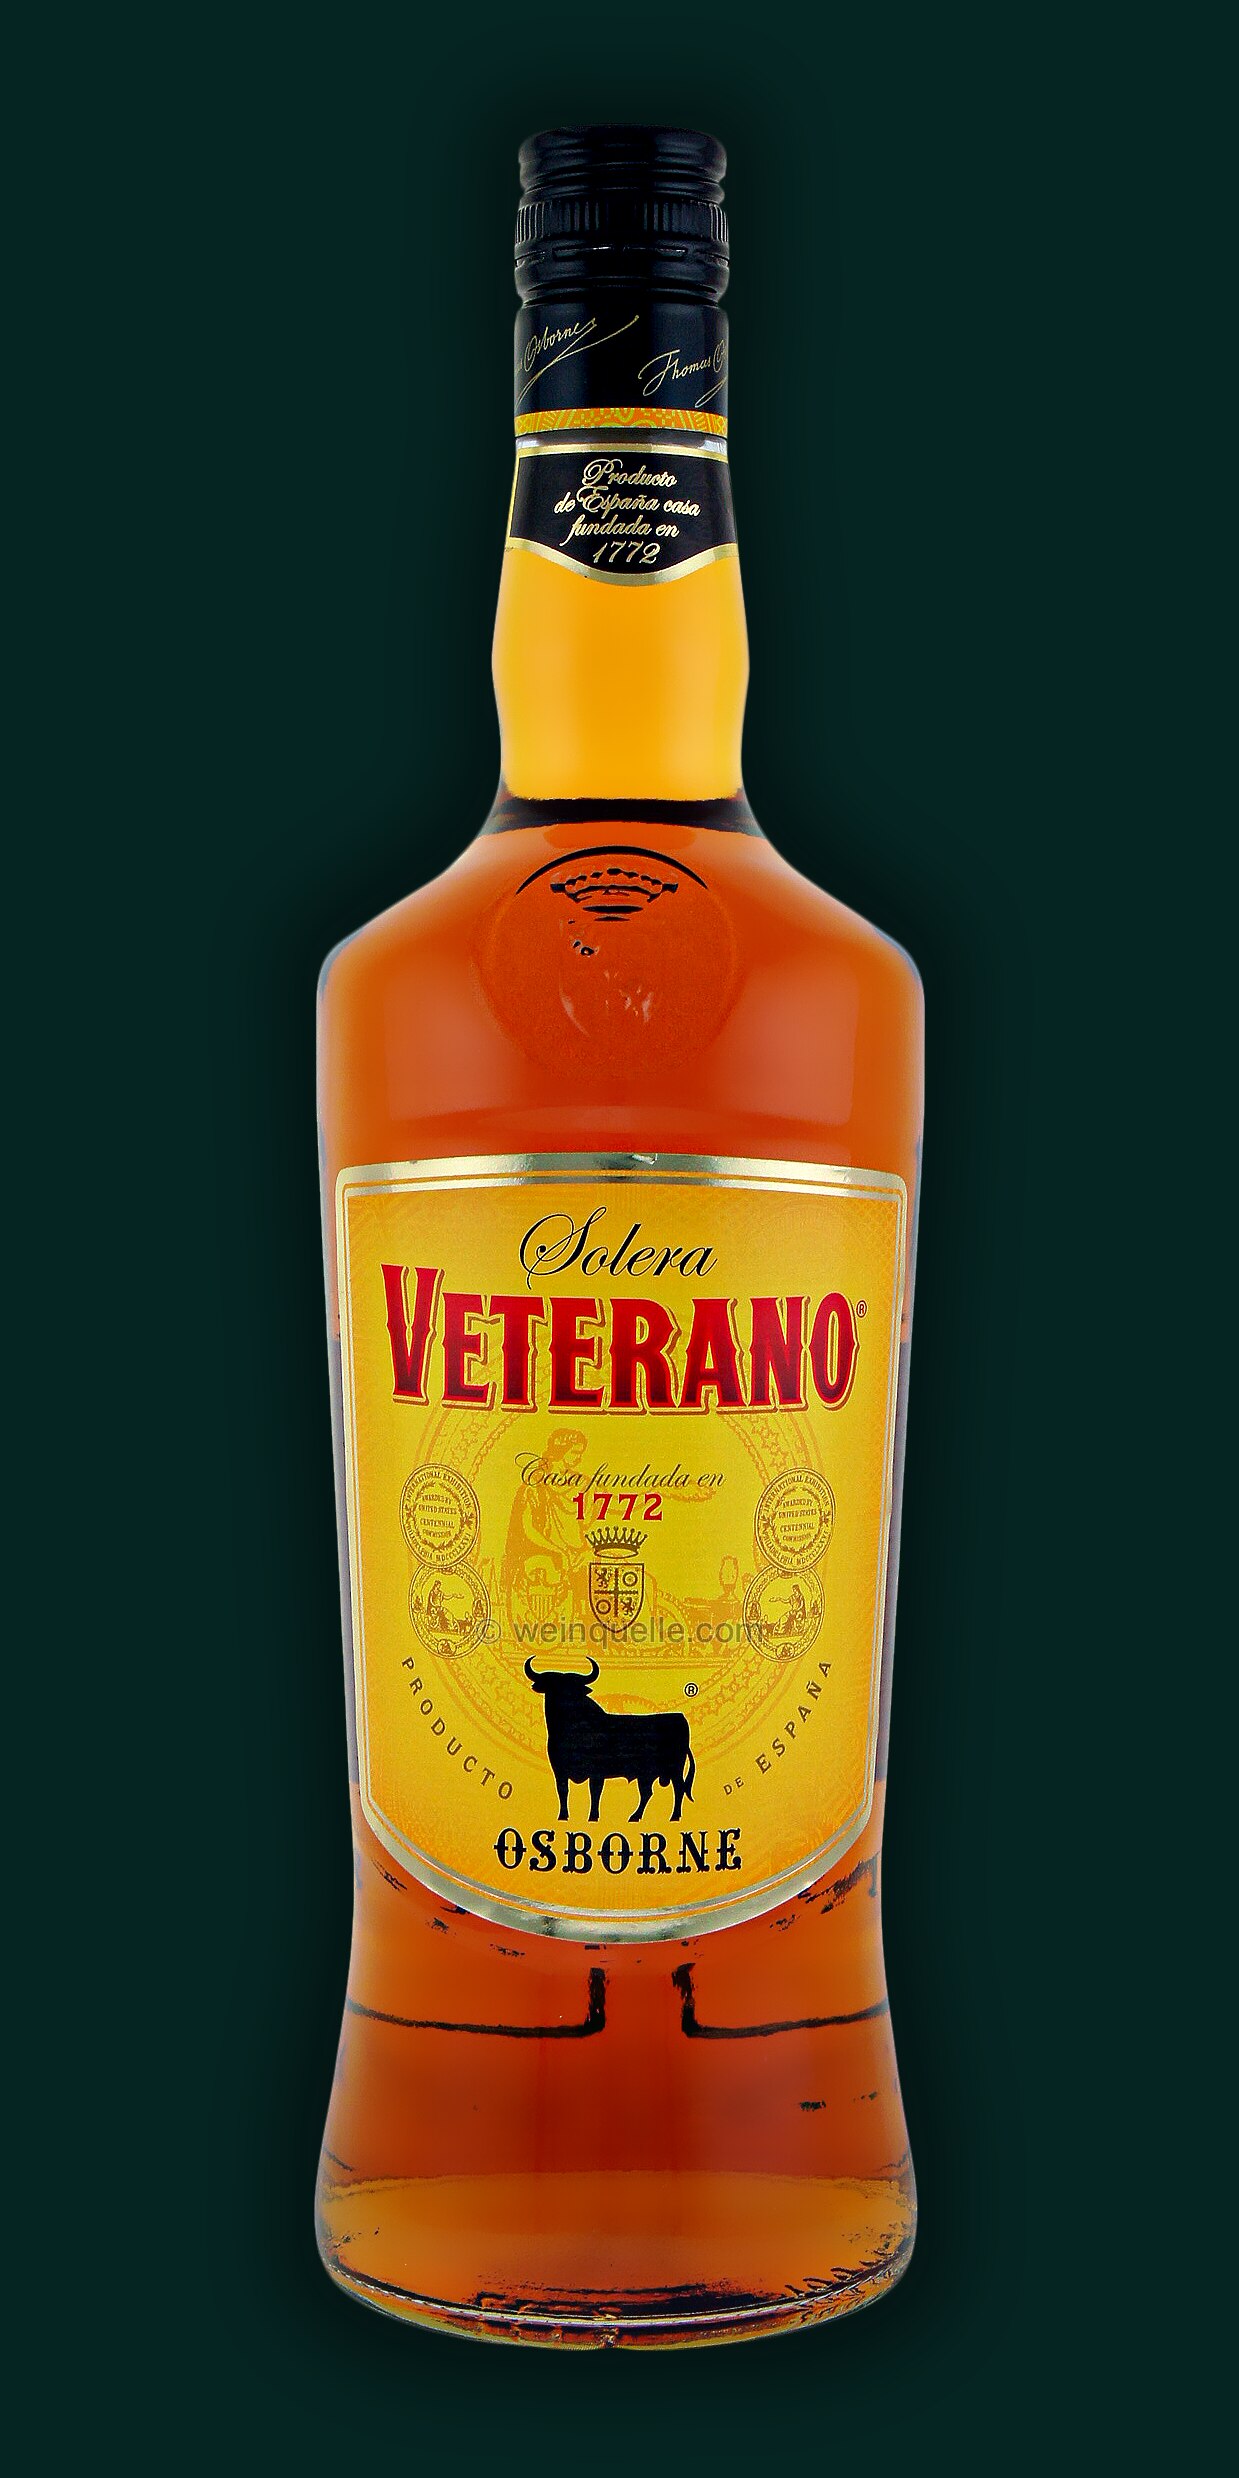 Veterano Spanische - Osborne Spirituose Liter Lühmann Weinquelle 1,0